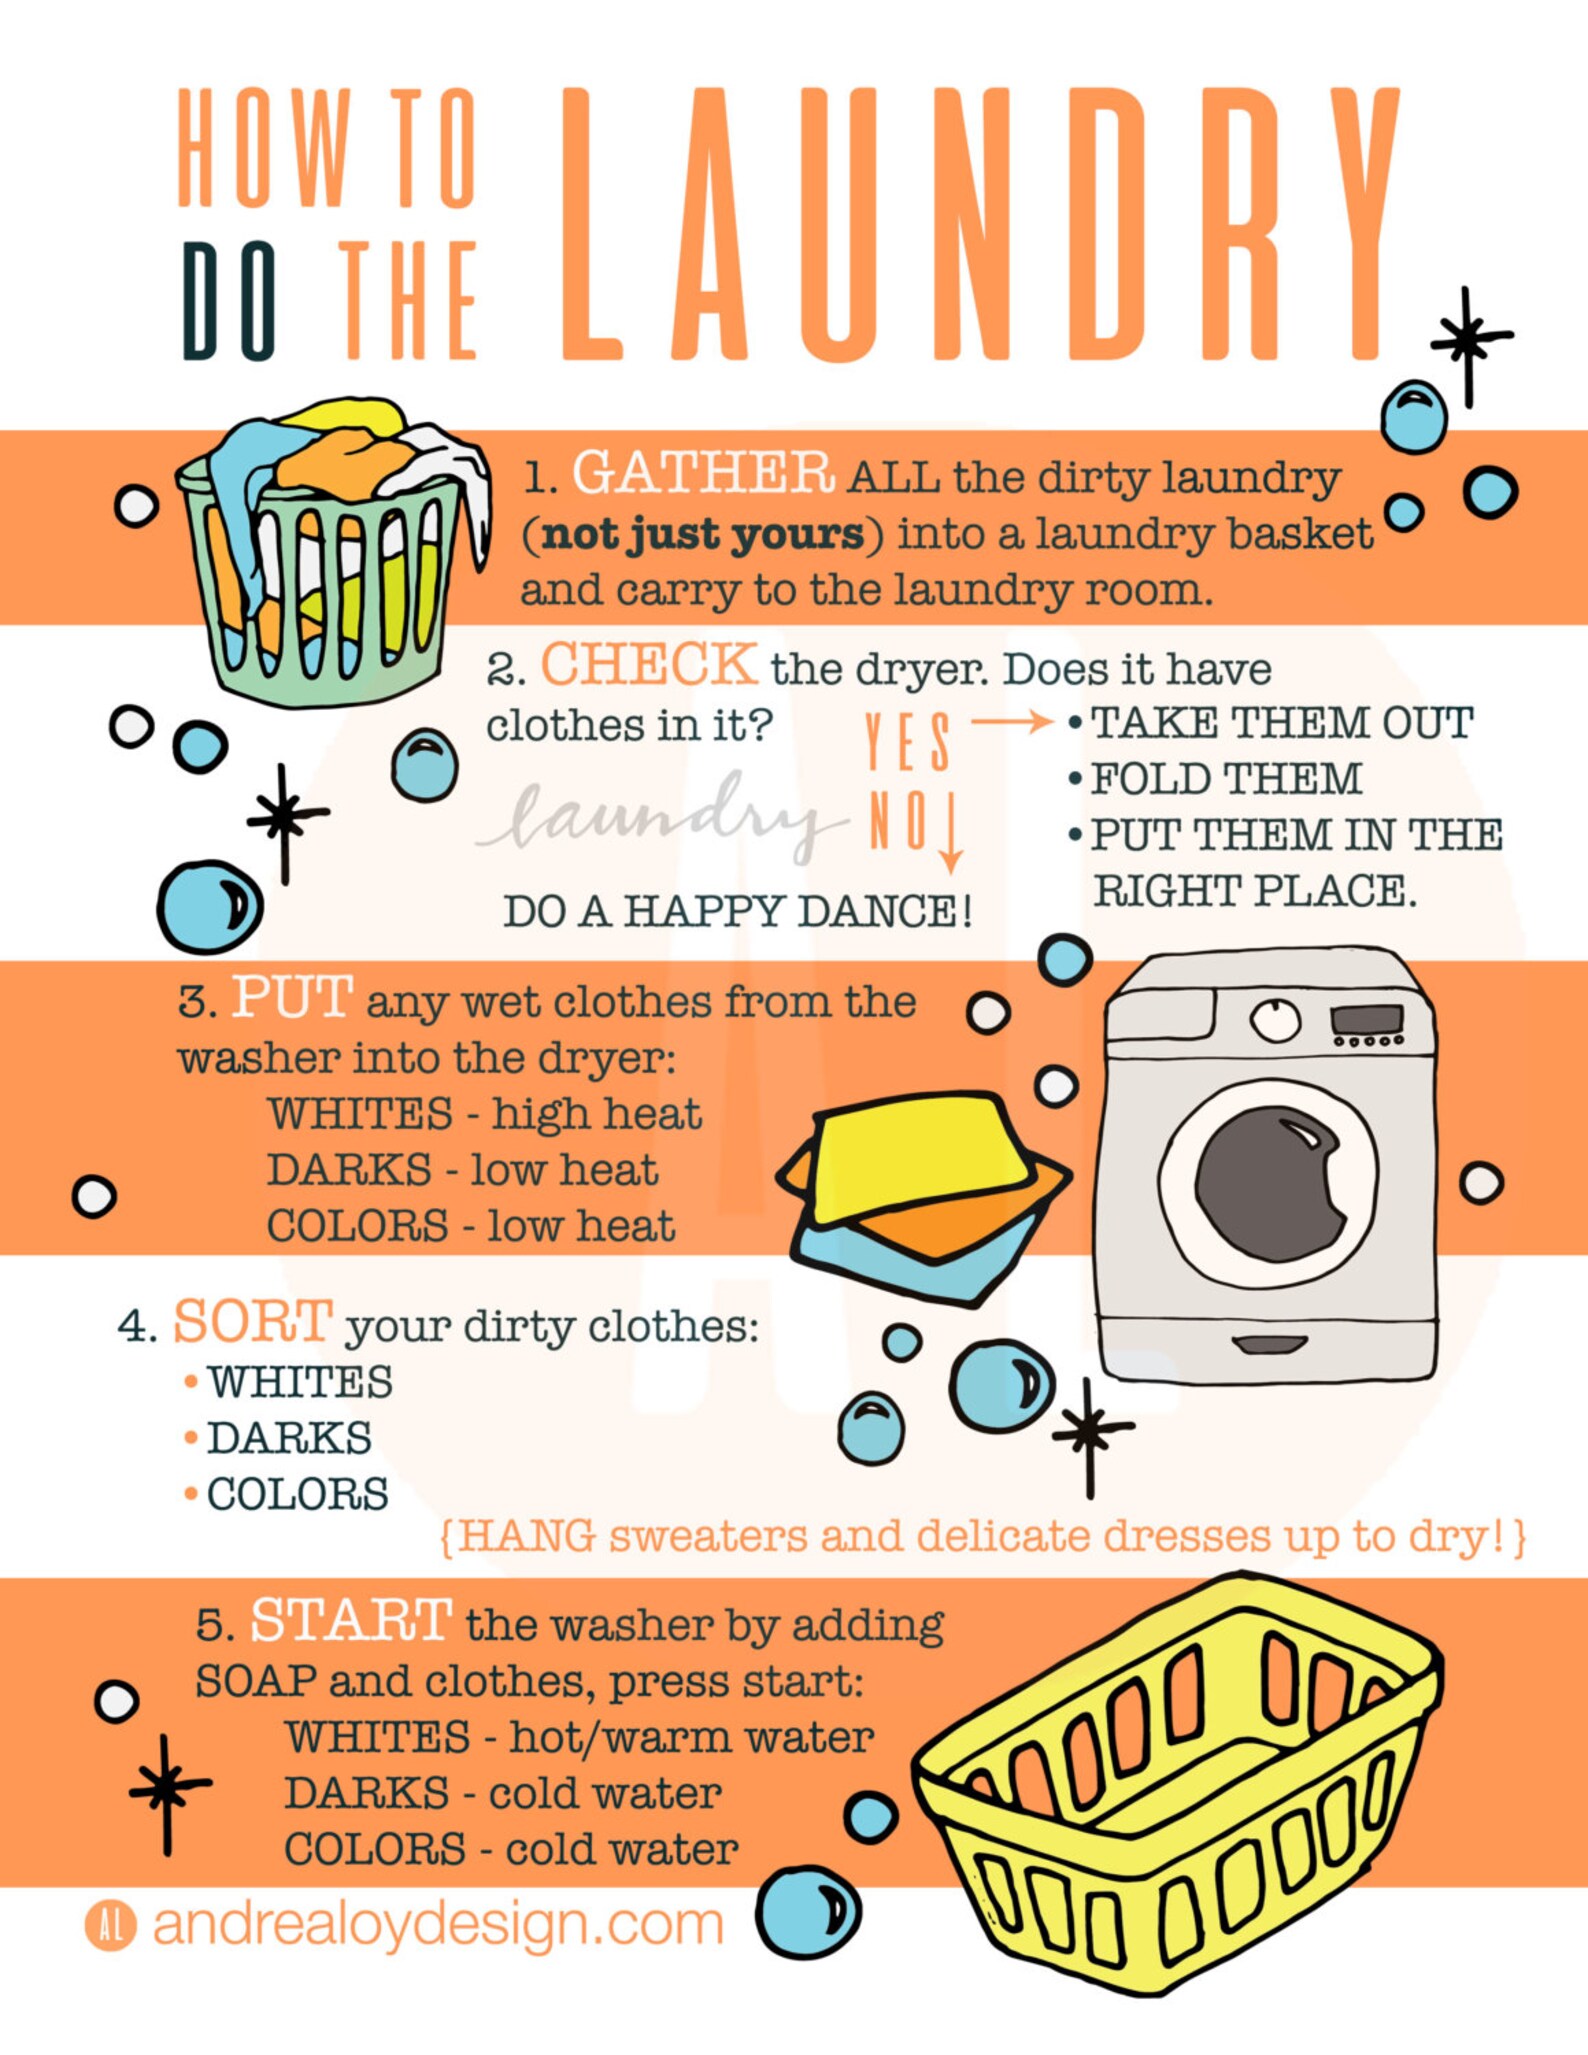 Did the laundry. Инфографика стирка. Инфографика прачки. To do the Laundry. Laundry перевод.